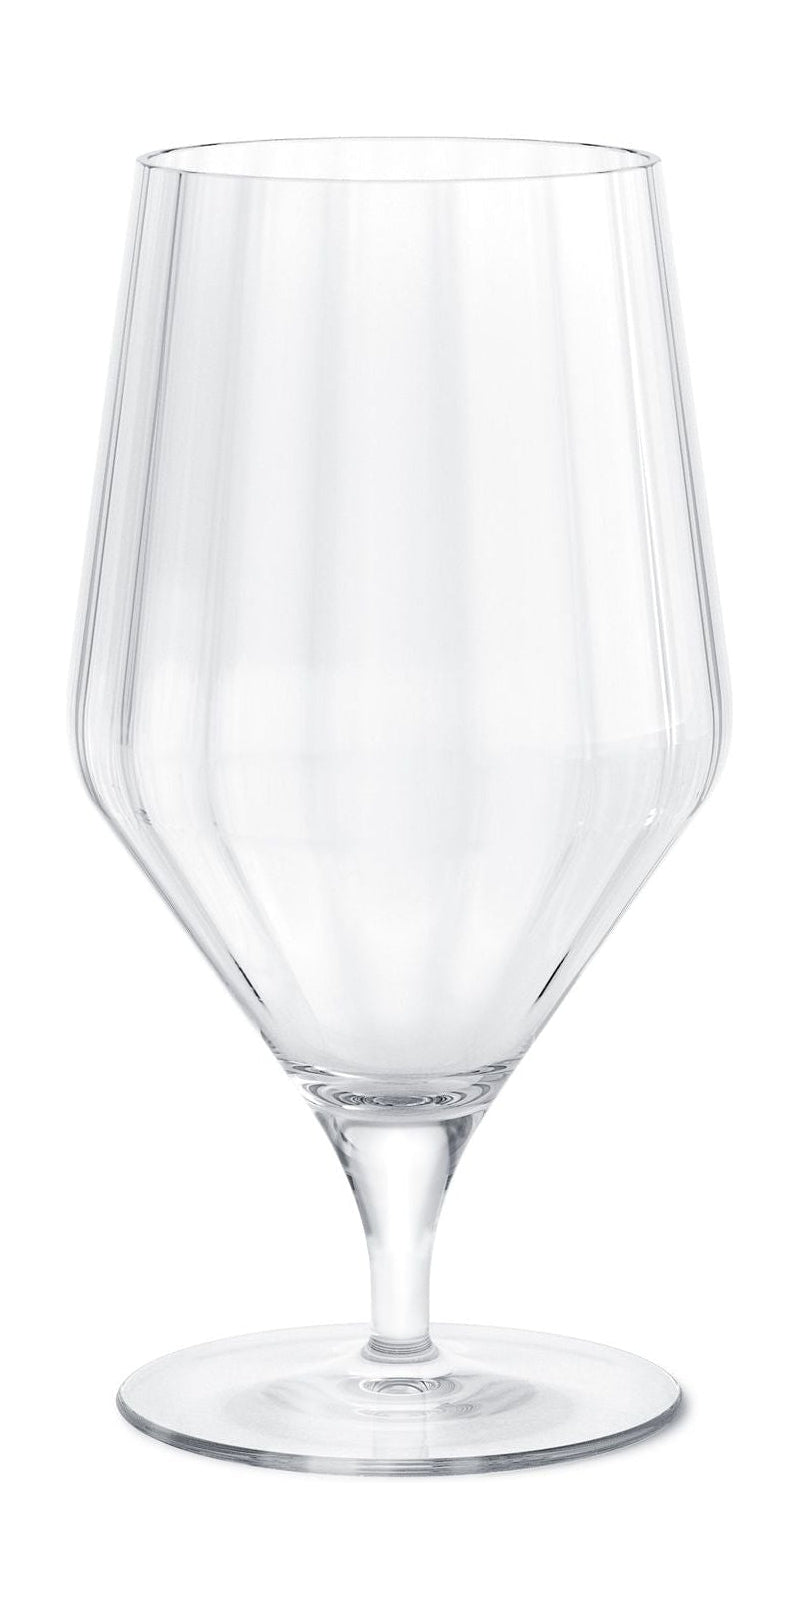 Georg Jensen Bernadotte Beer Glass 45 Cl, 6 stk